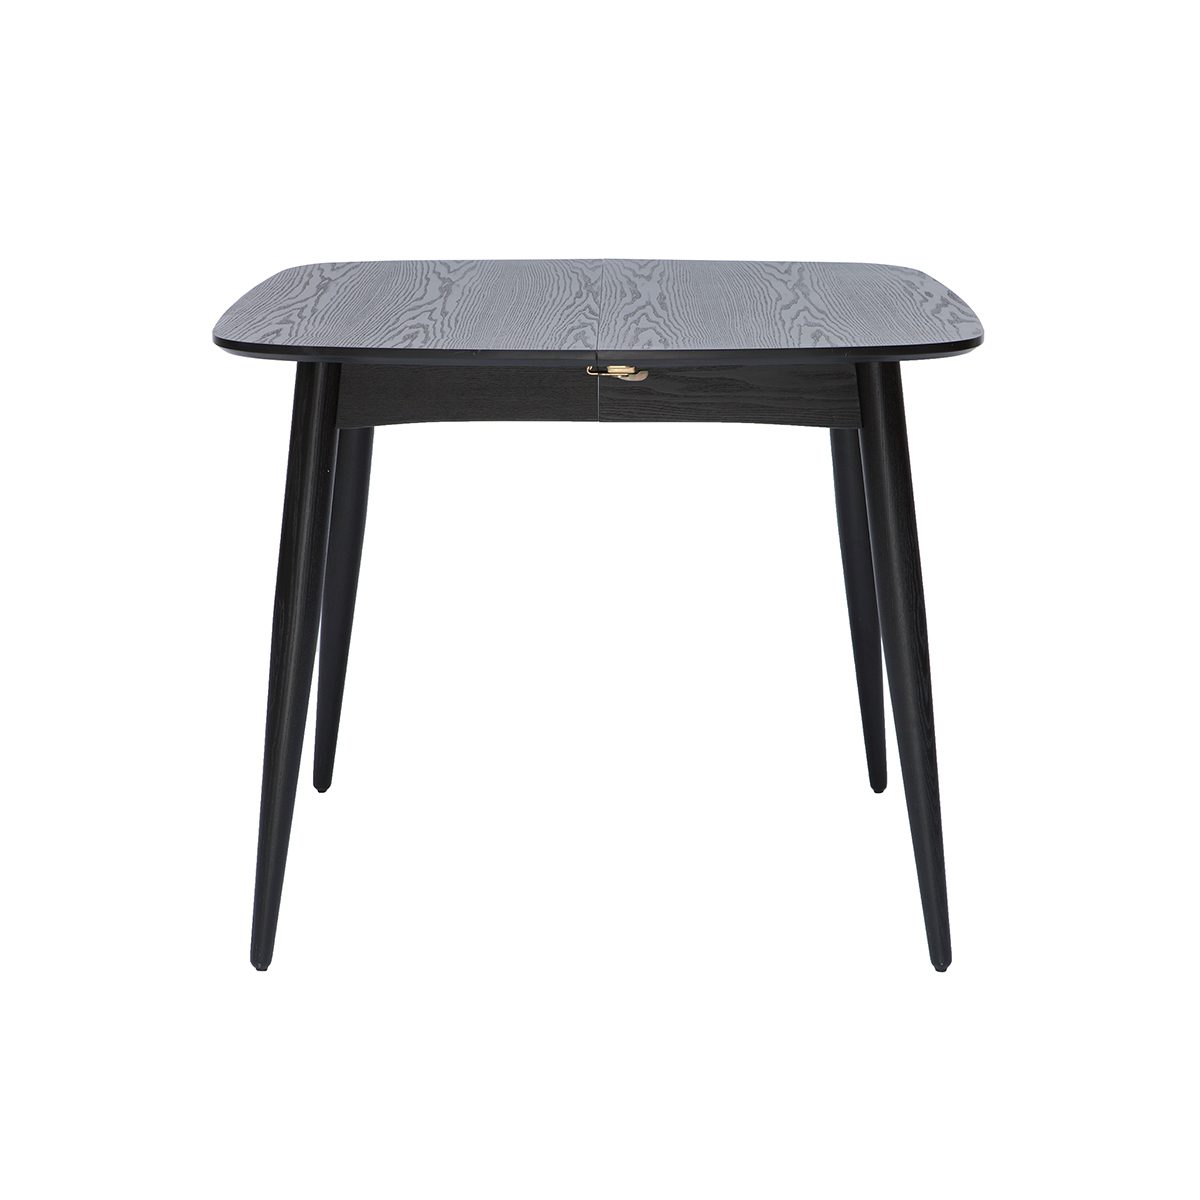 Table à manger design extensible noire L90-130 cm carrée NORDECO vue1